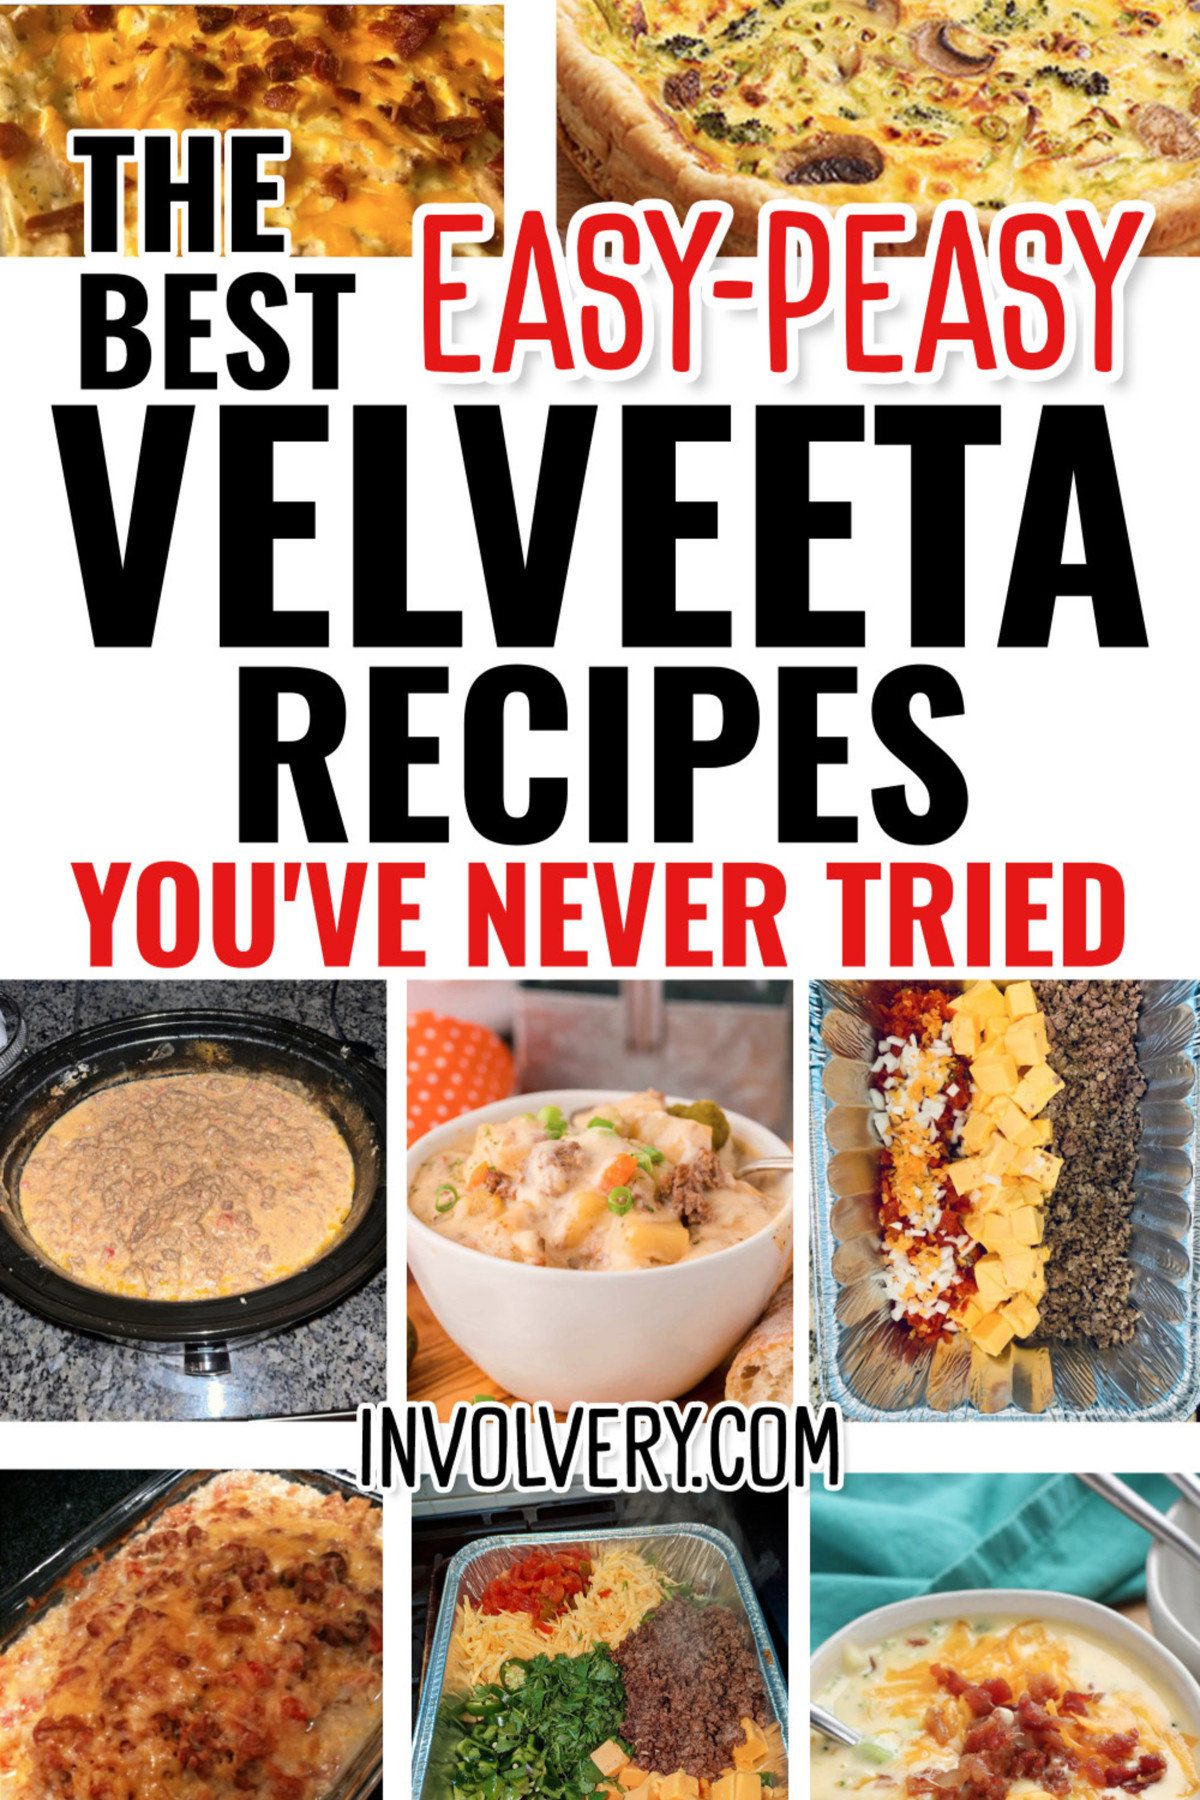 Velveeta Recipes